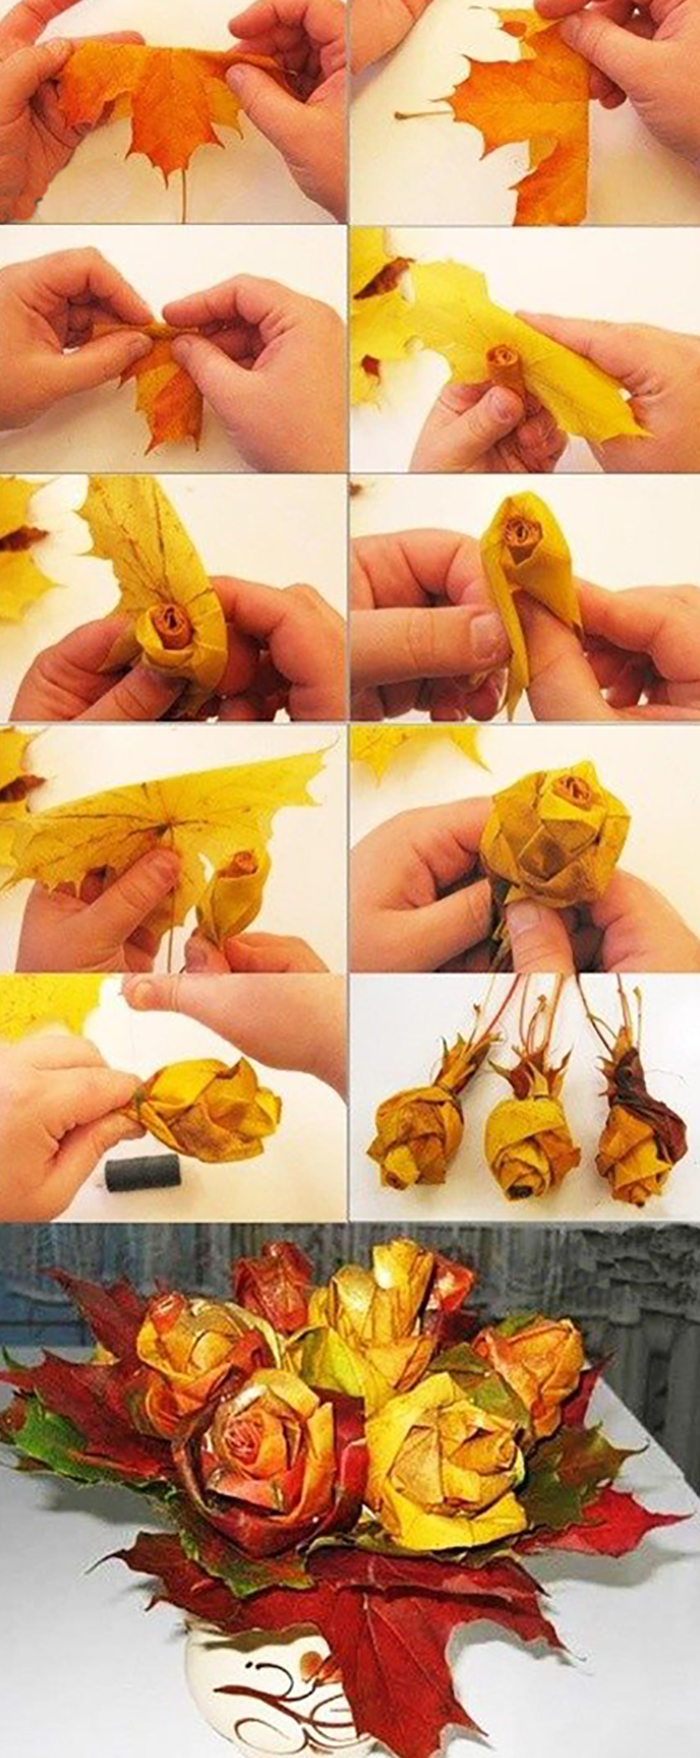 Поделки из осенних листьев: композиция своими руками, как сделать, фото